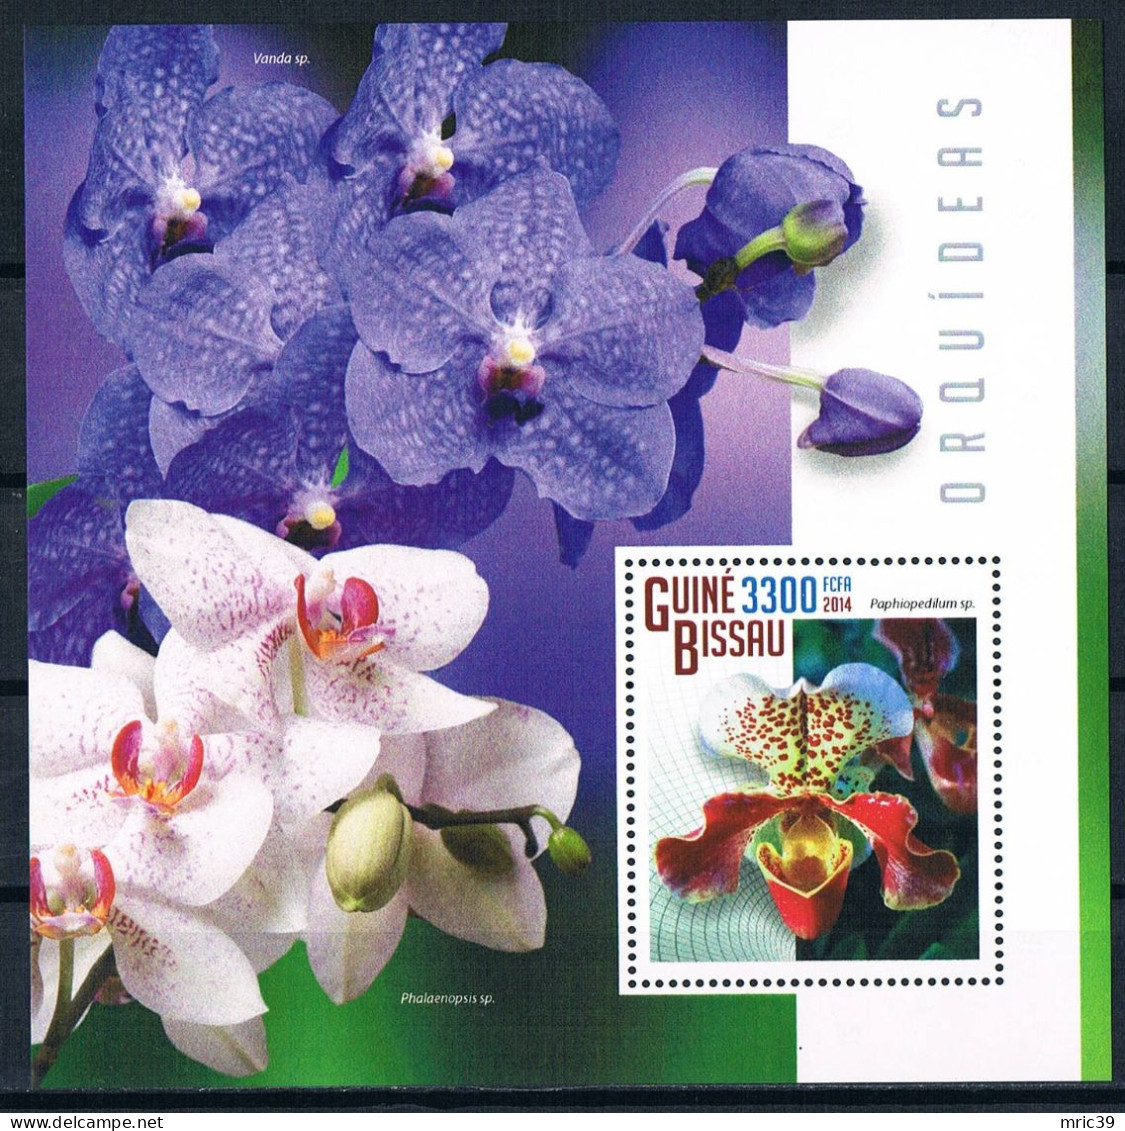 Bloc Sheet Fleurs Orchidées Flowers Orchids  Neuf  MNH **  Guine Bissau 2014 - Orquideas